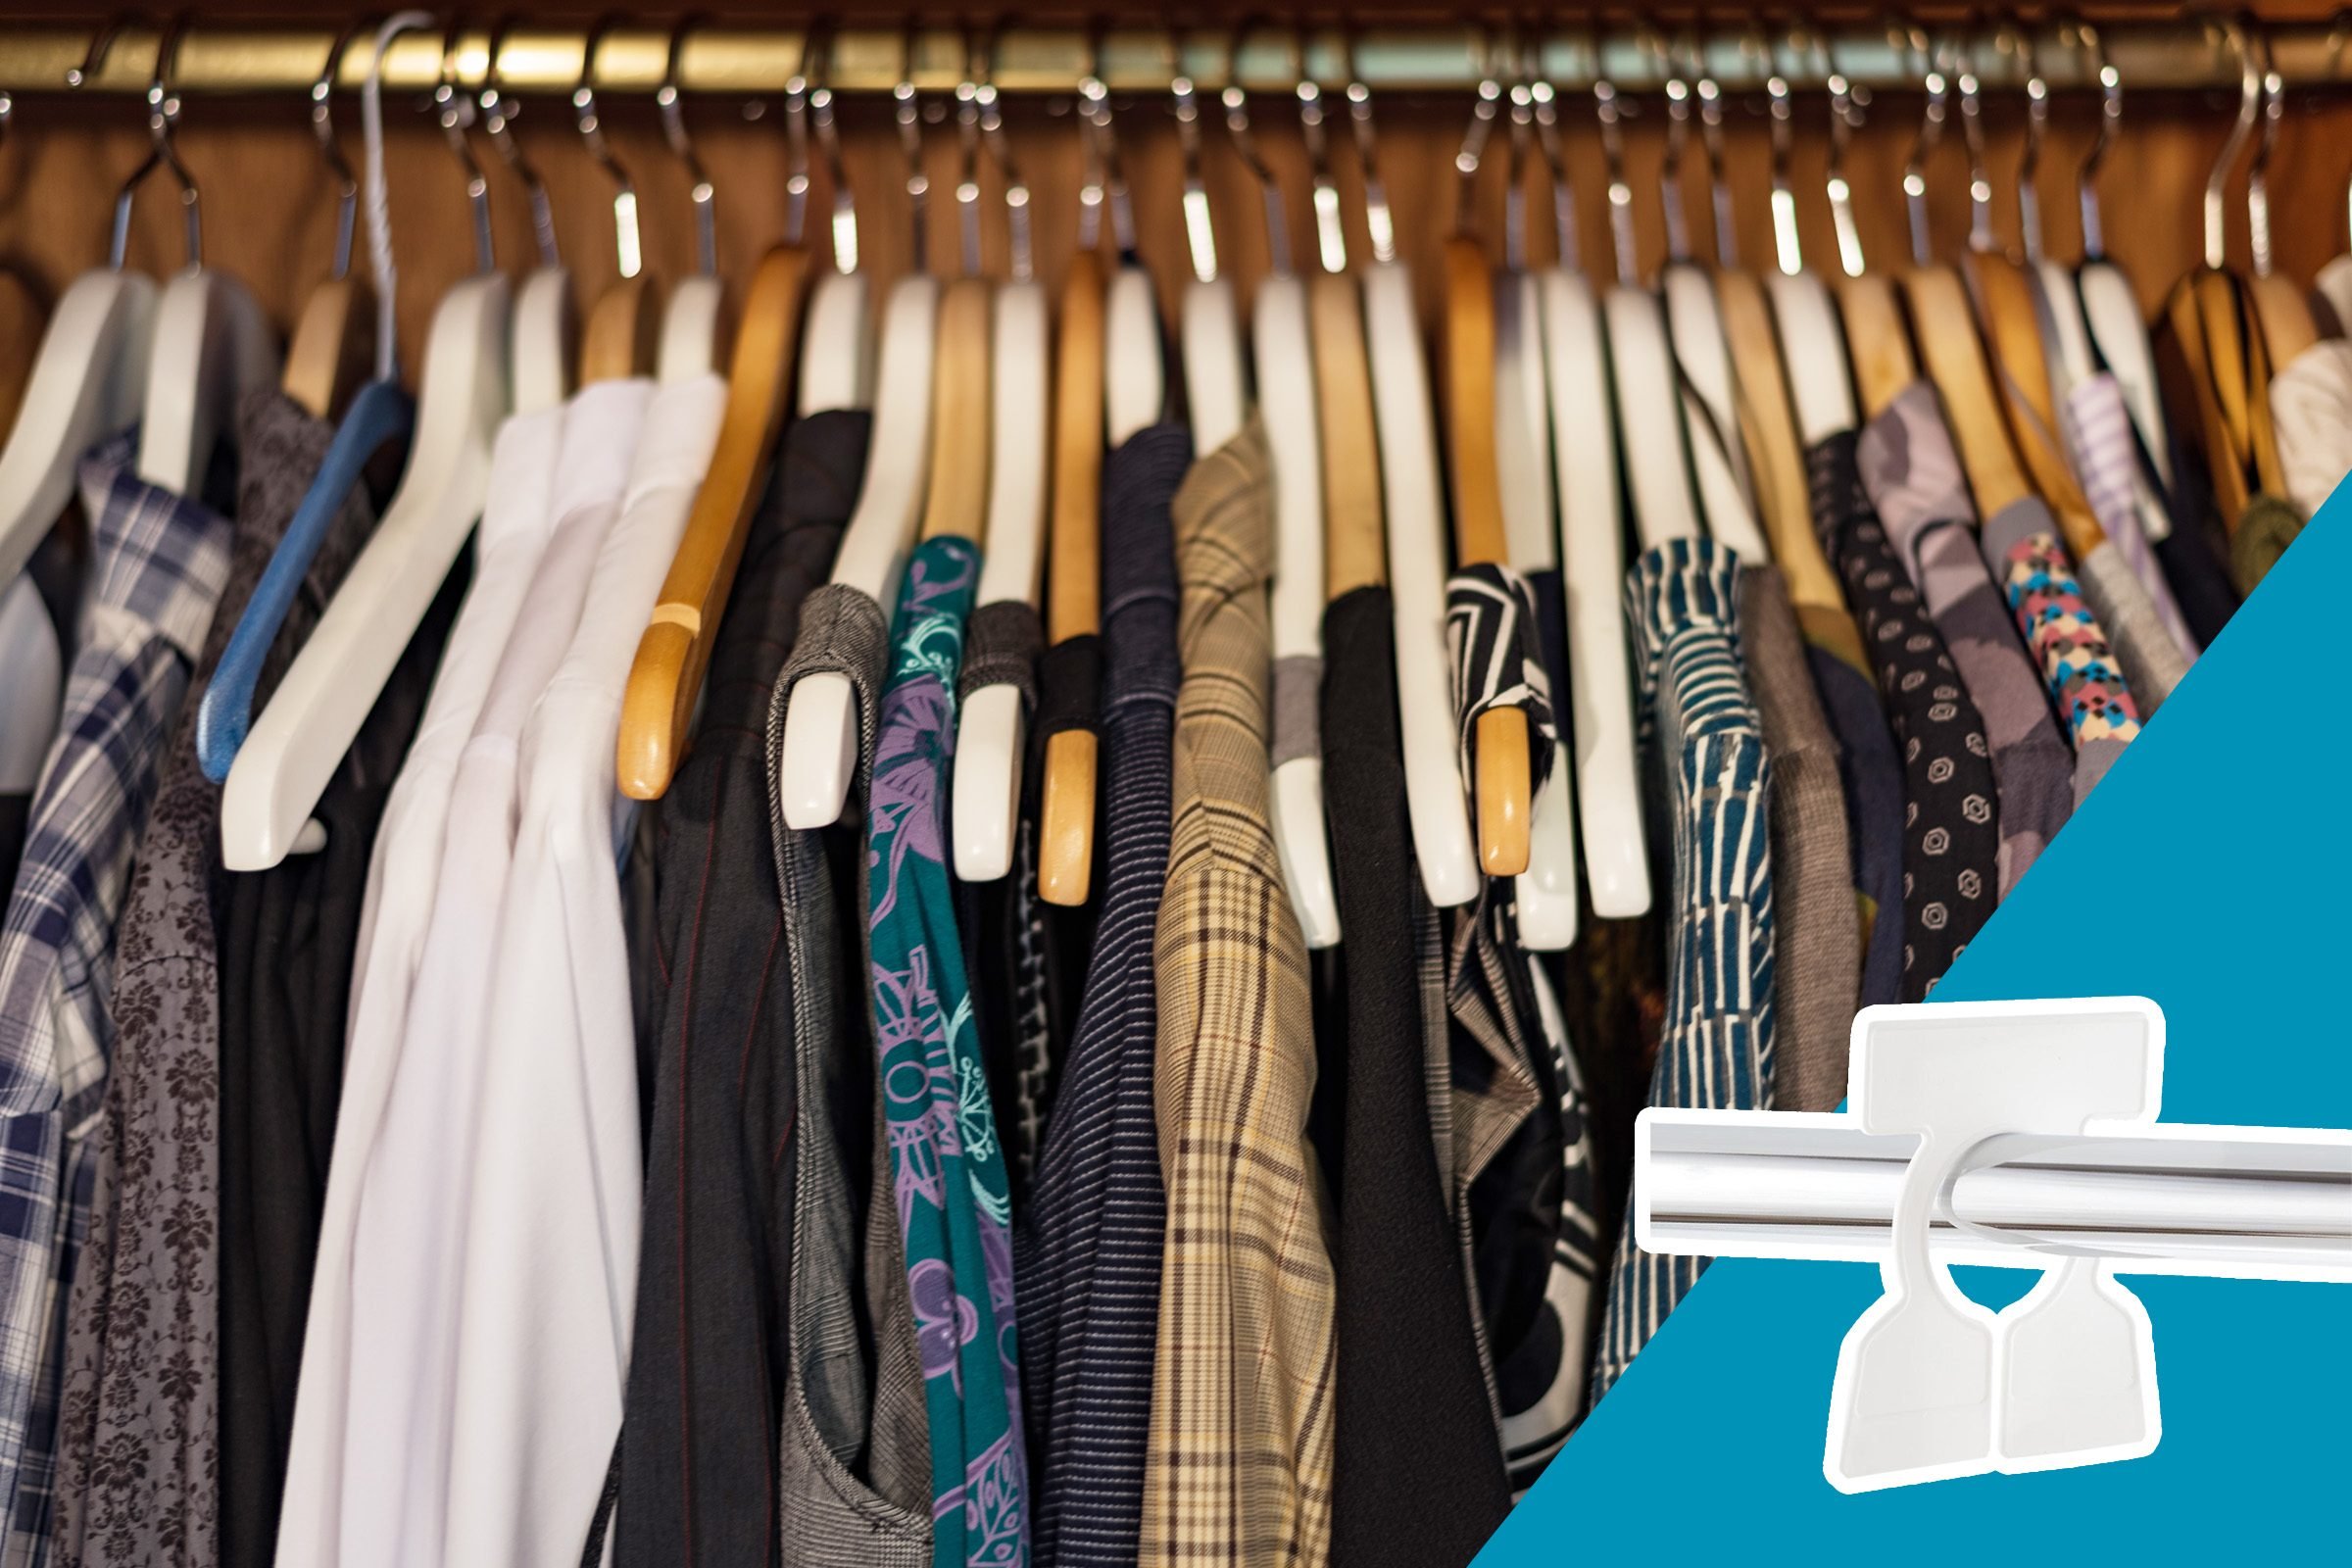 15 mẹo giúp tủ quần áo của bạn luôn gọn gàng, ngăn nắp và thời trang - Ảnh 4.